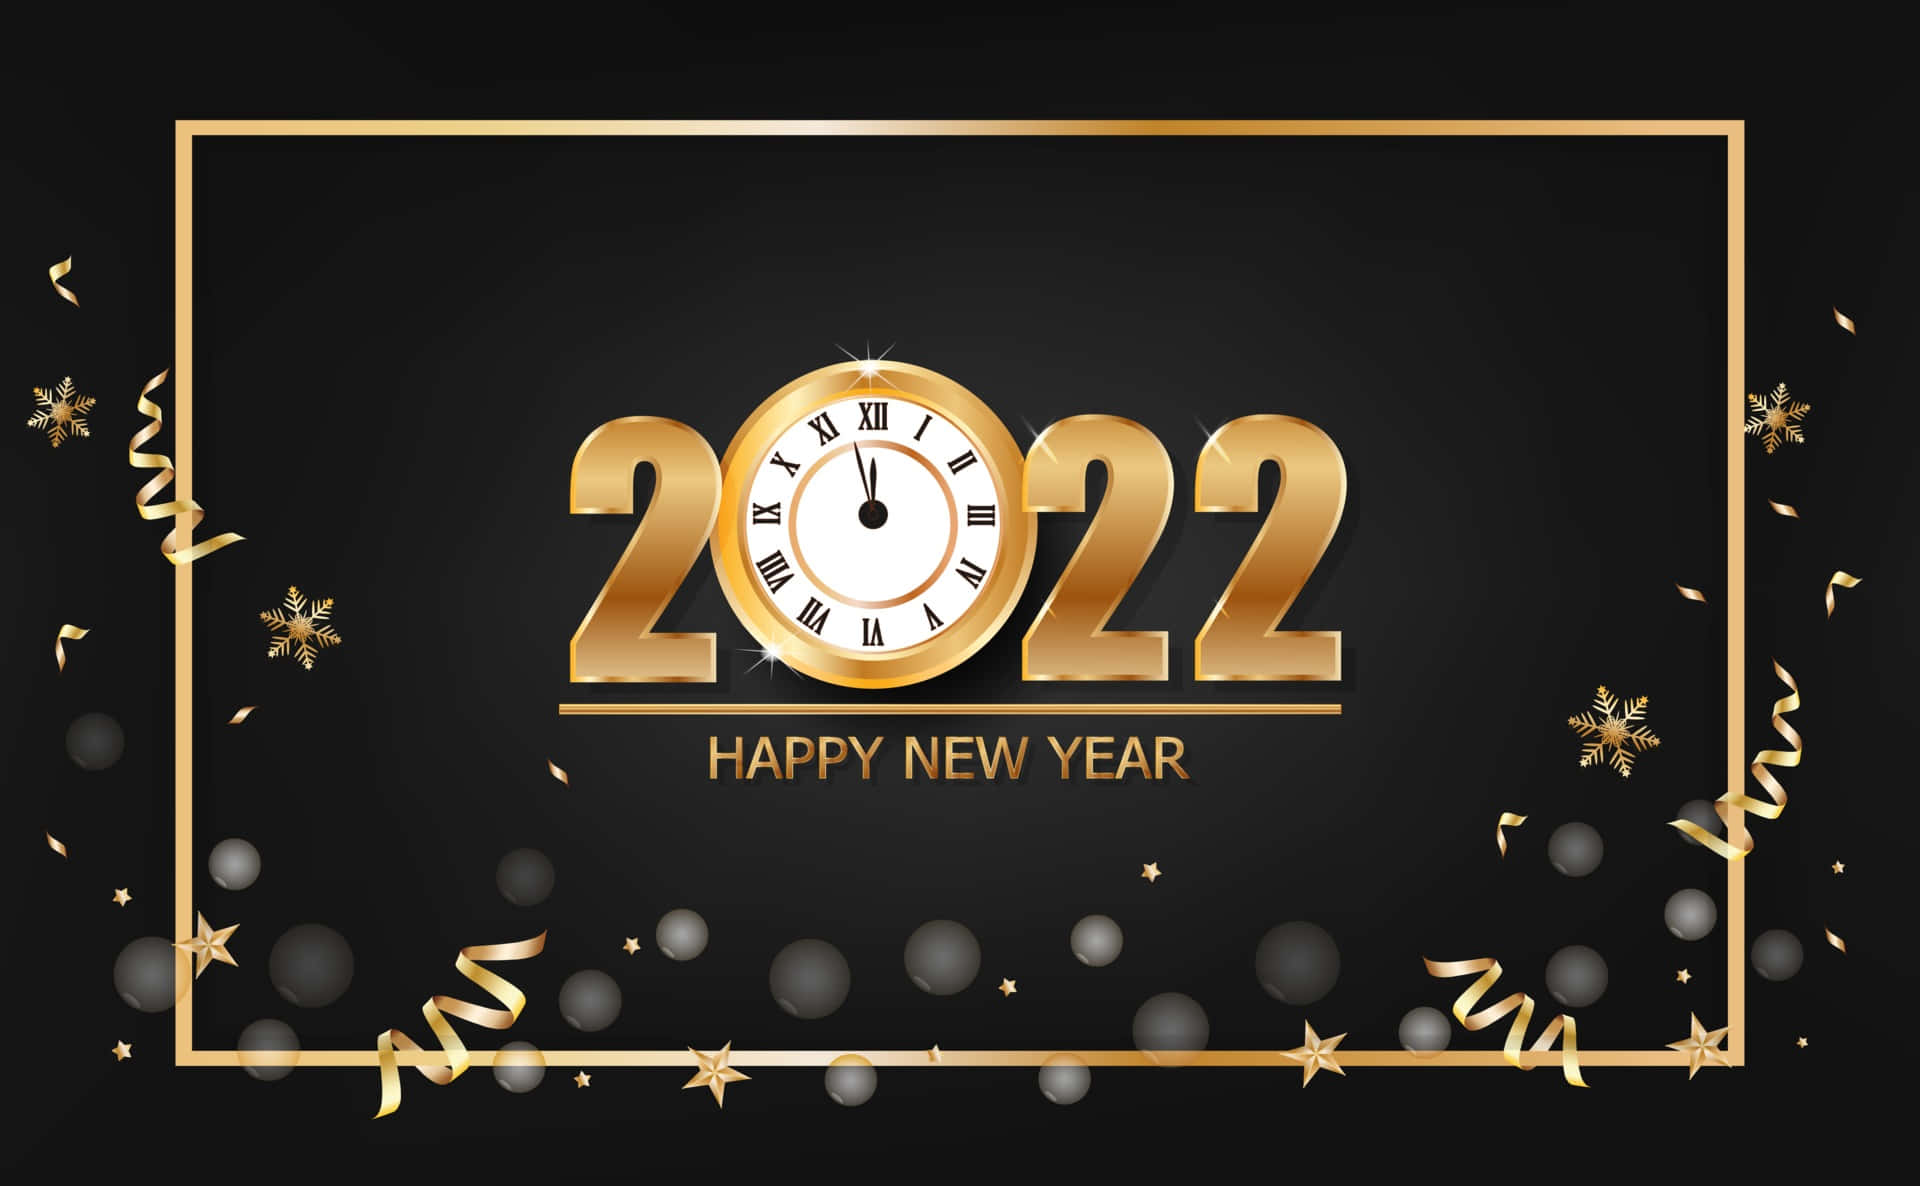 Feliceanno Nuovo 2022 - Le Risoluzioni Di Capodanno Sono Arrivate!